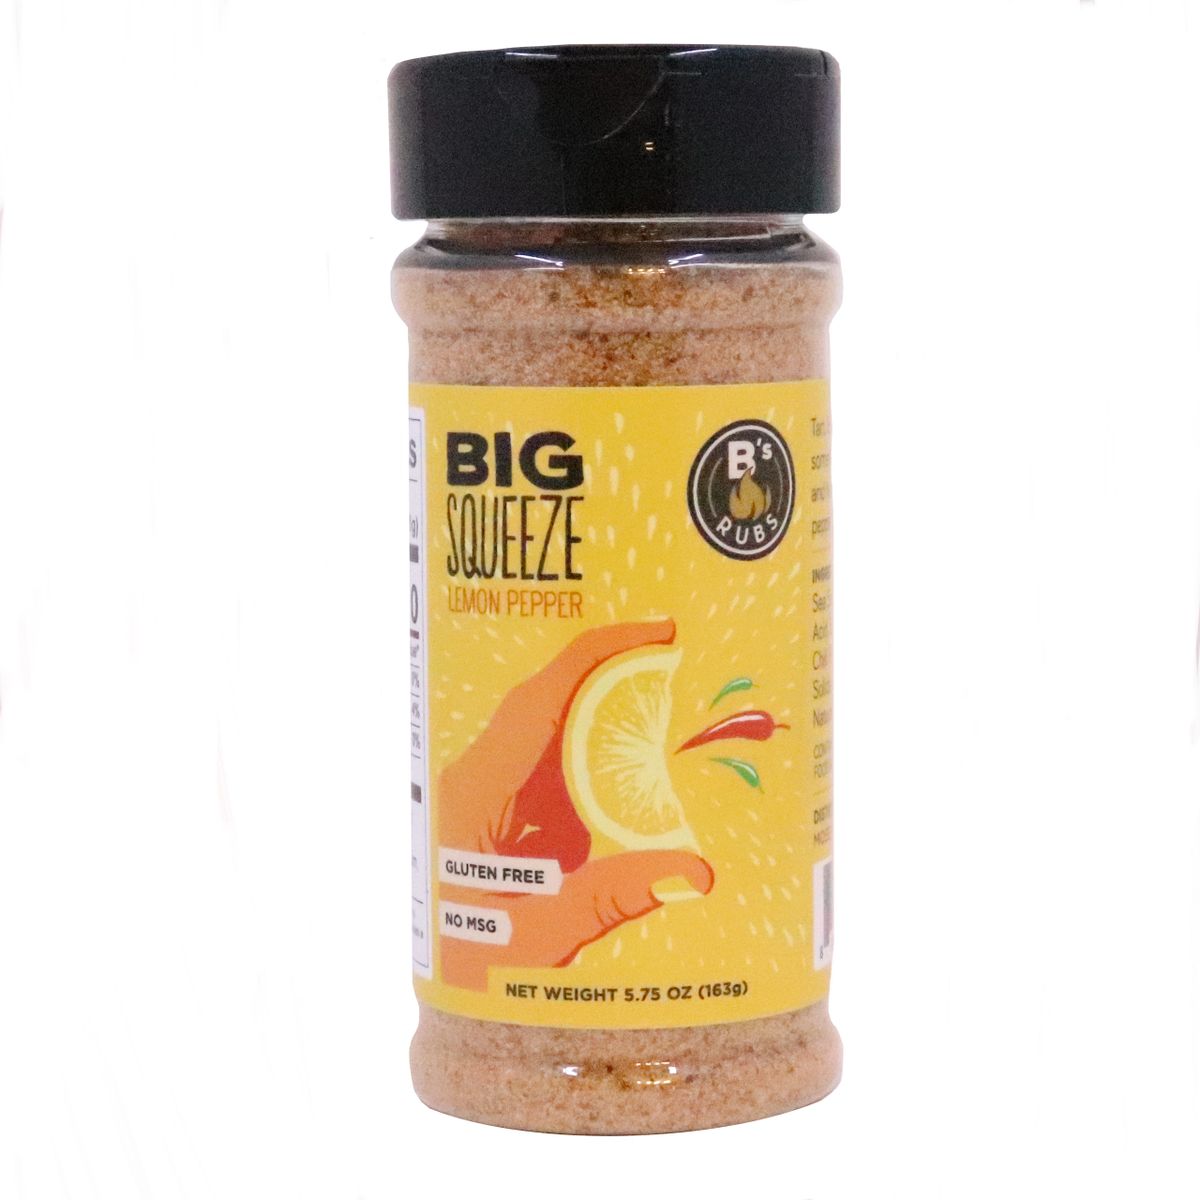 Lemon Pepper 65gr – Aroma Spice